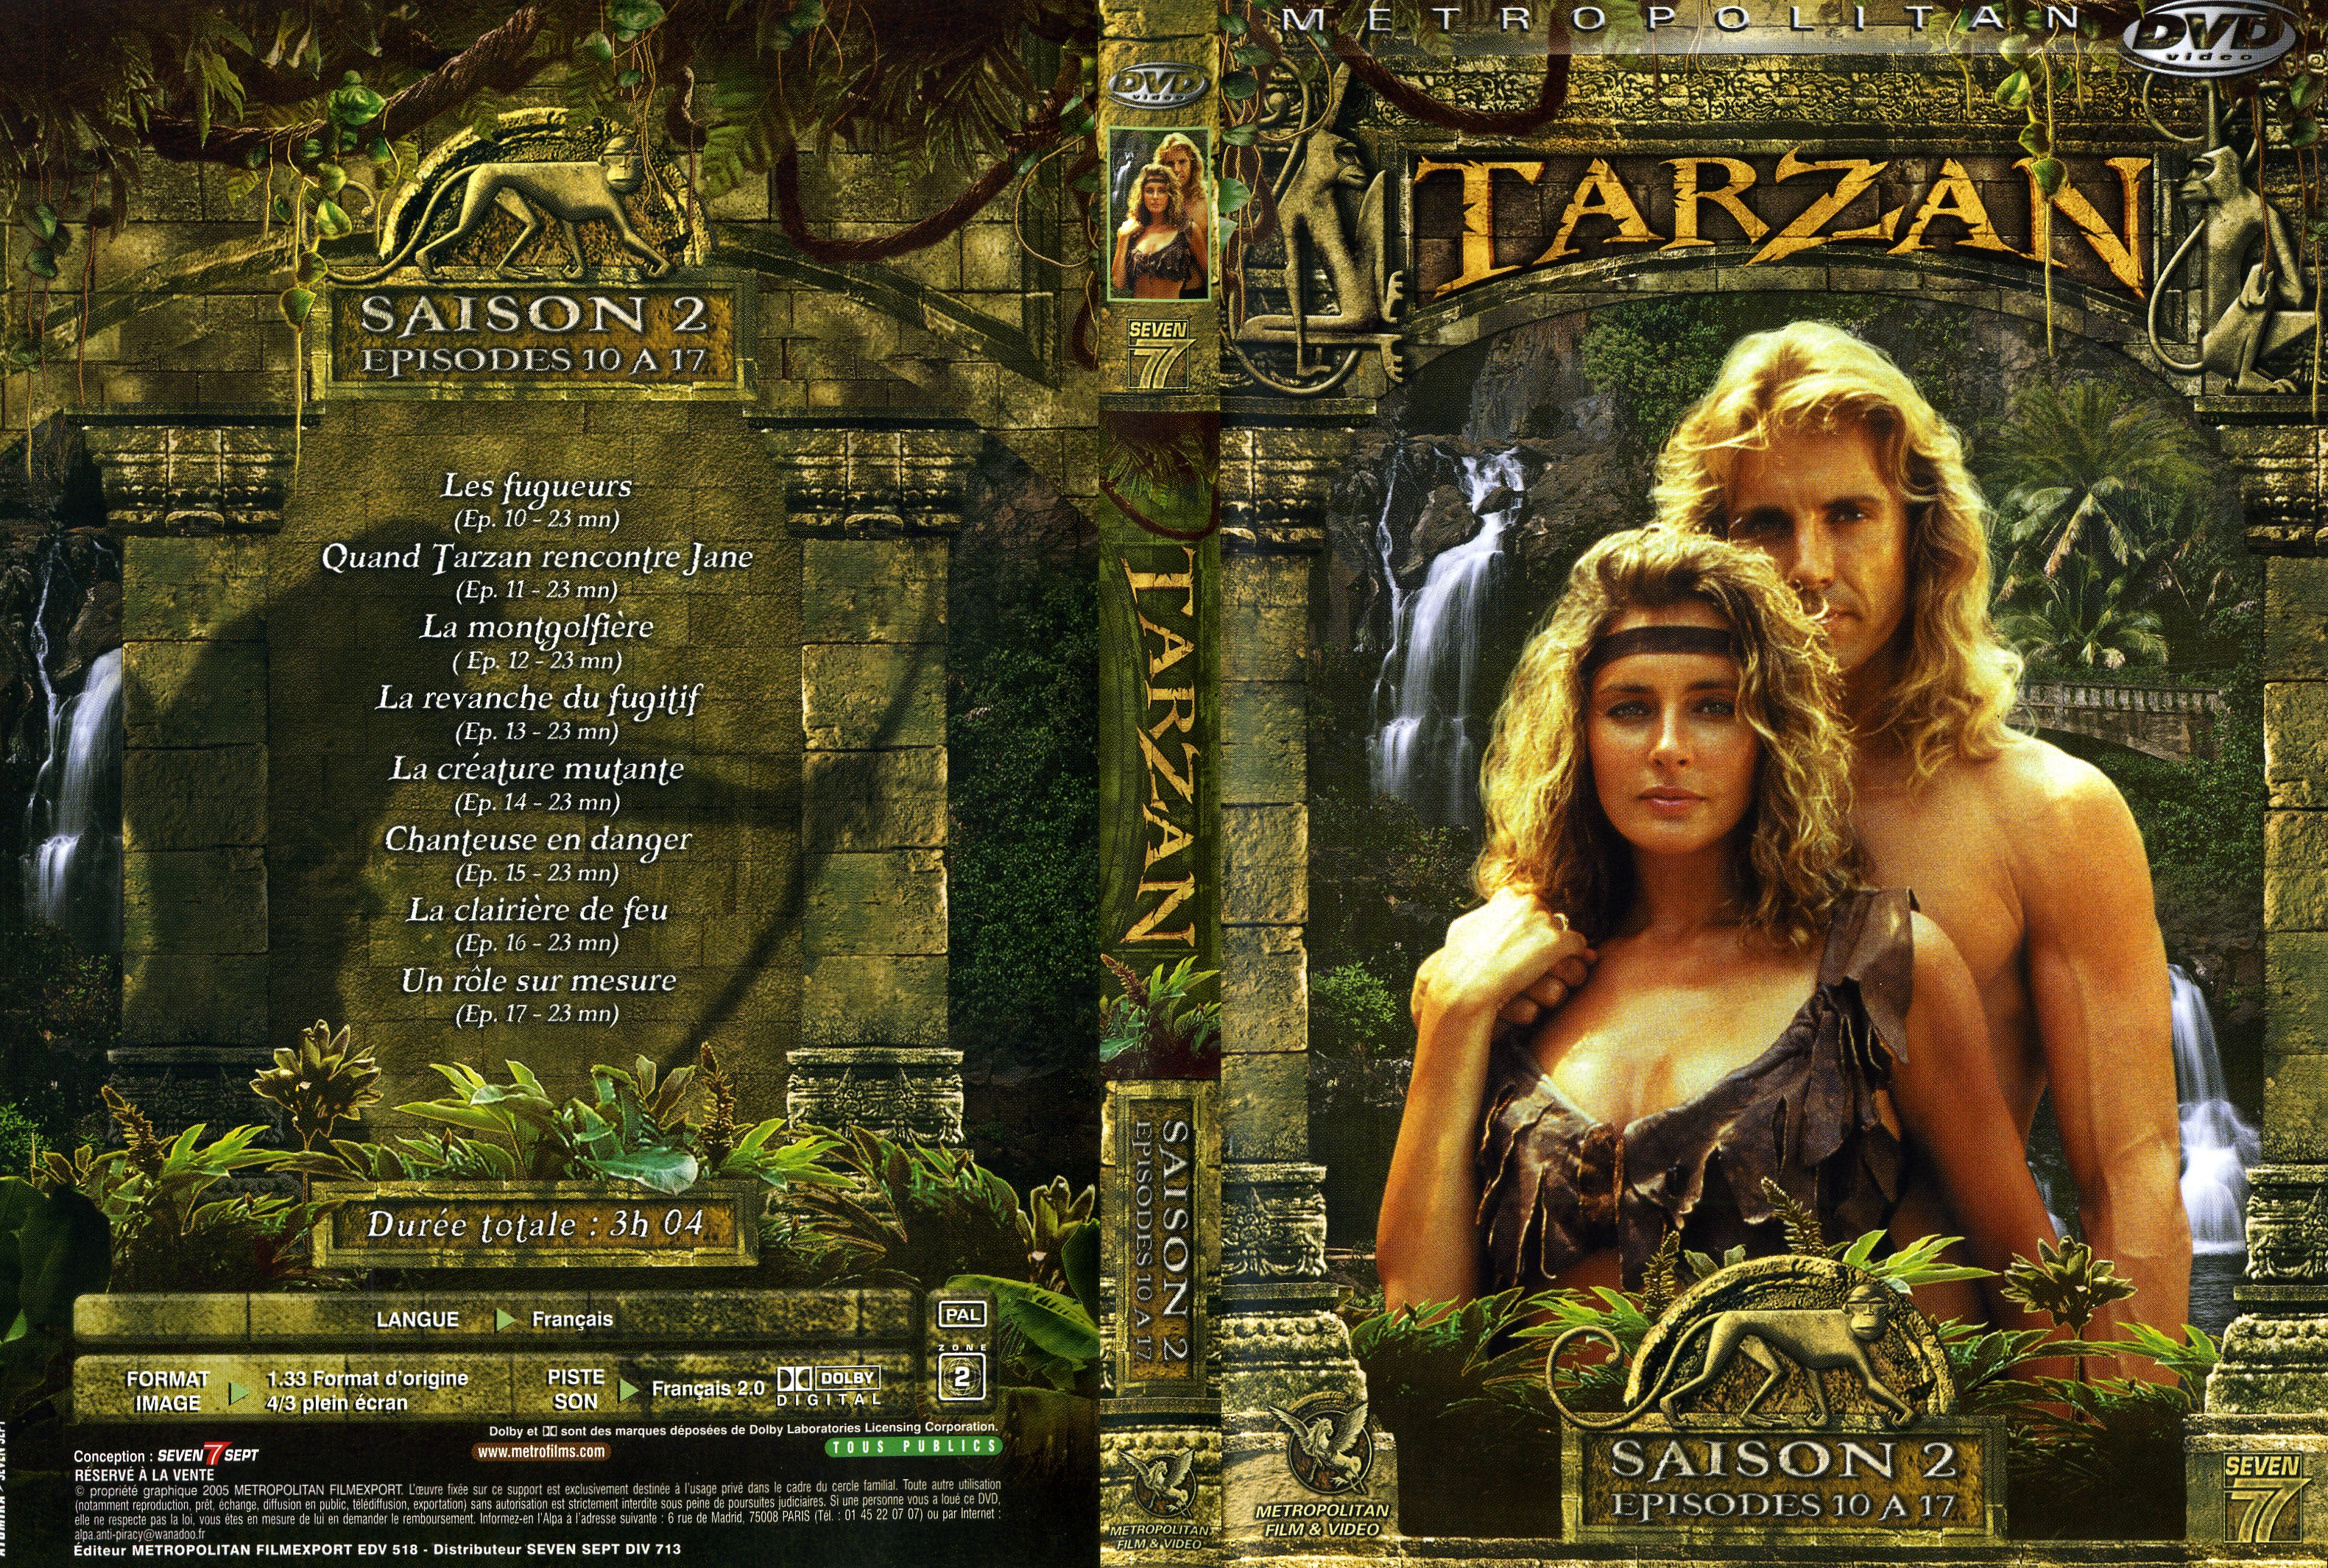 Jaquette DVD Tarzan Saison 2 DVD 2